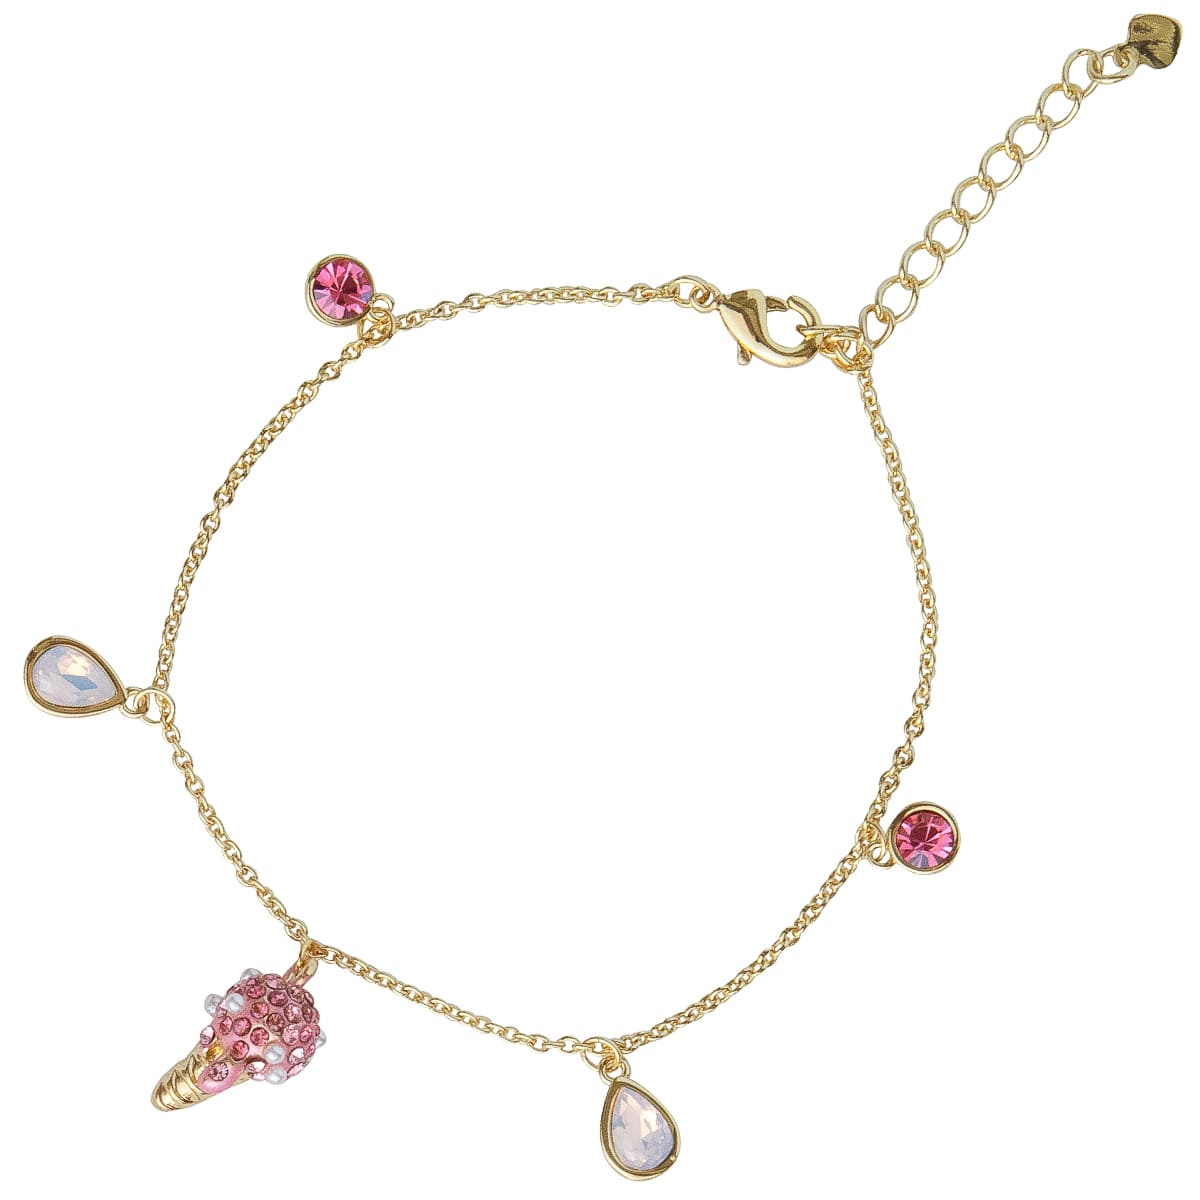 K.V. Fuchs Design Schmuck Damen Armband mit Eistüte in gold mit Zirkonia in pink-rosa-weiß »A-22-28«